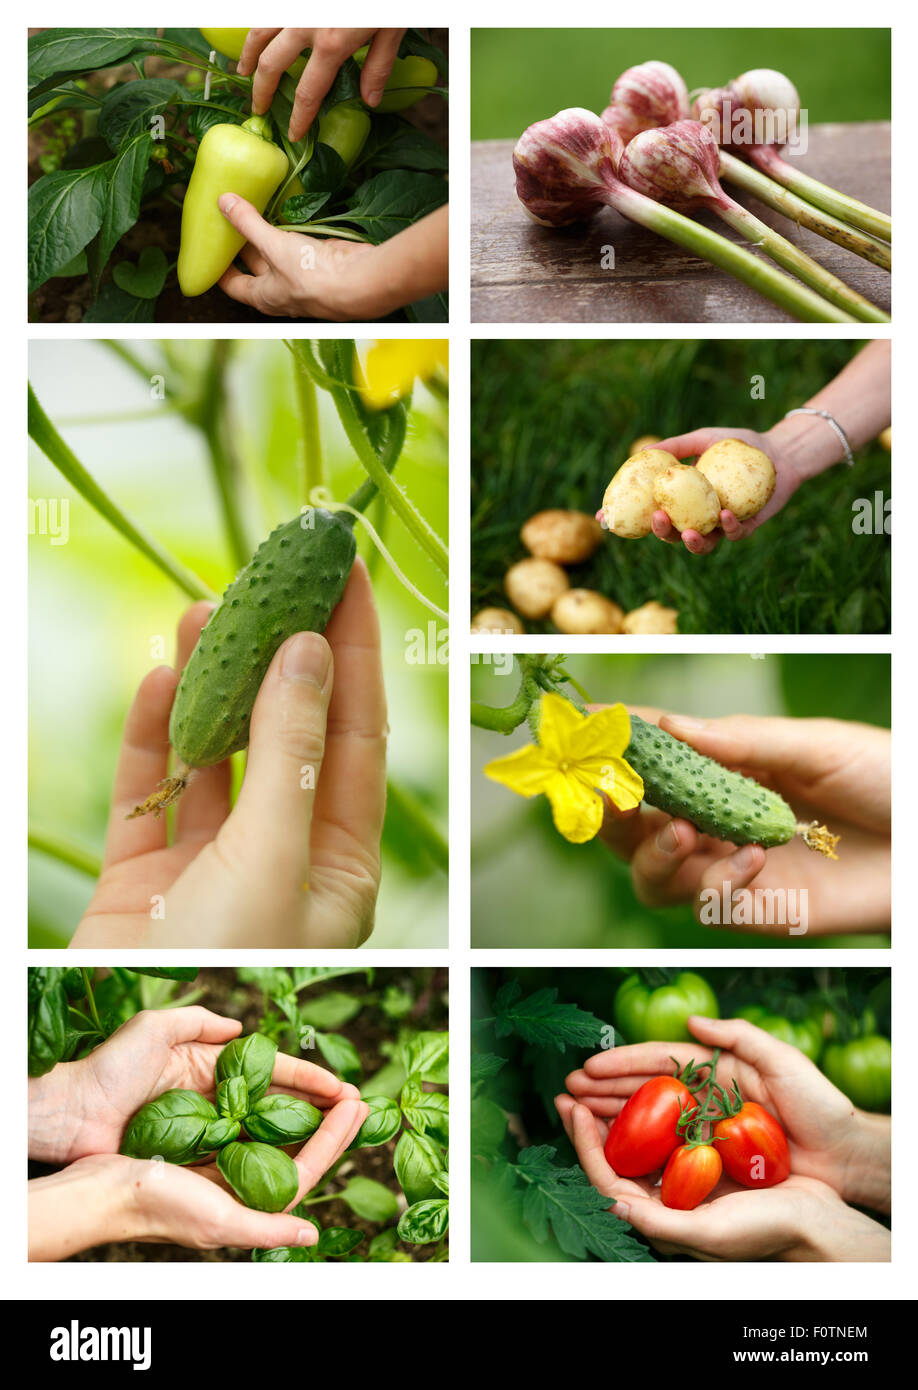 Collage zu ernten. Locavore sauber Essen, ökologische Landwirtschaft, lokale Landwirtschaft, Anbau, Ernte Konzept. Stockfoto